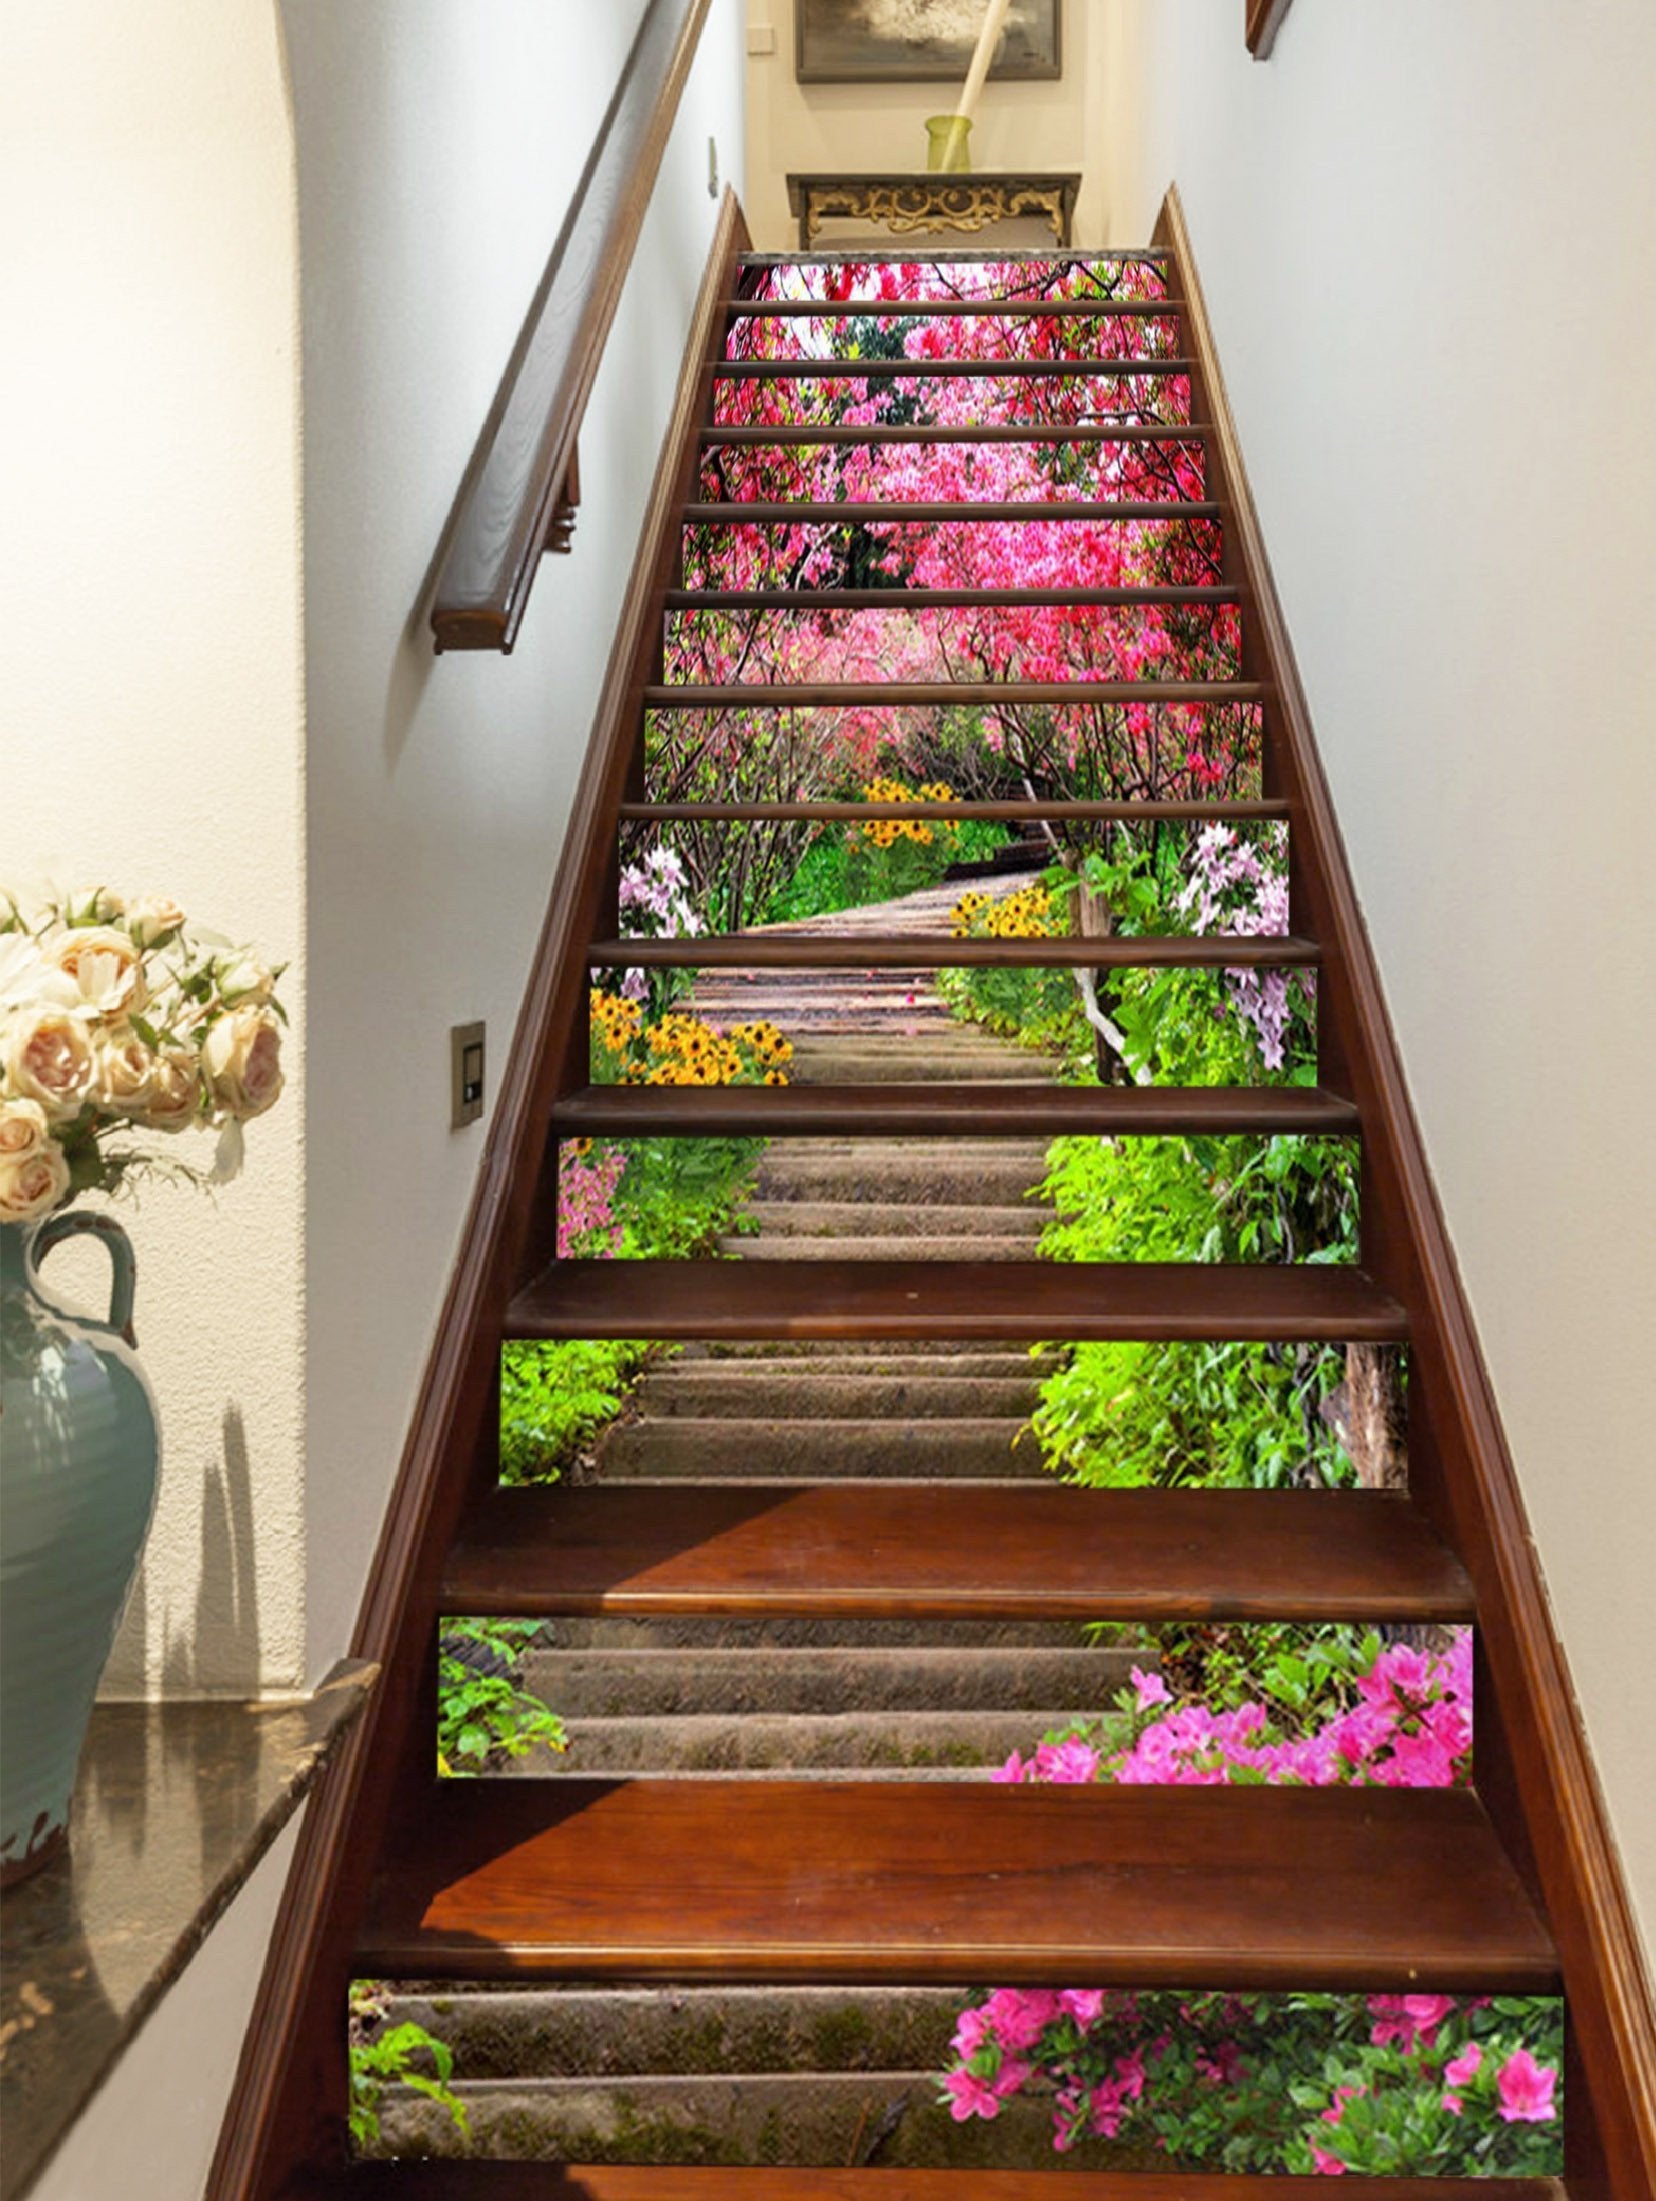 3D Stairway Flowers 1510 Stair Risers Wallpaper AJ Wallpaper 